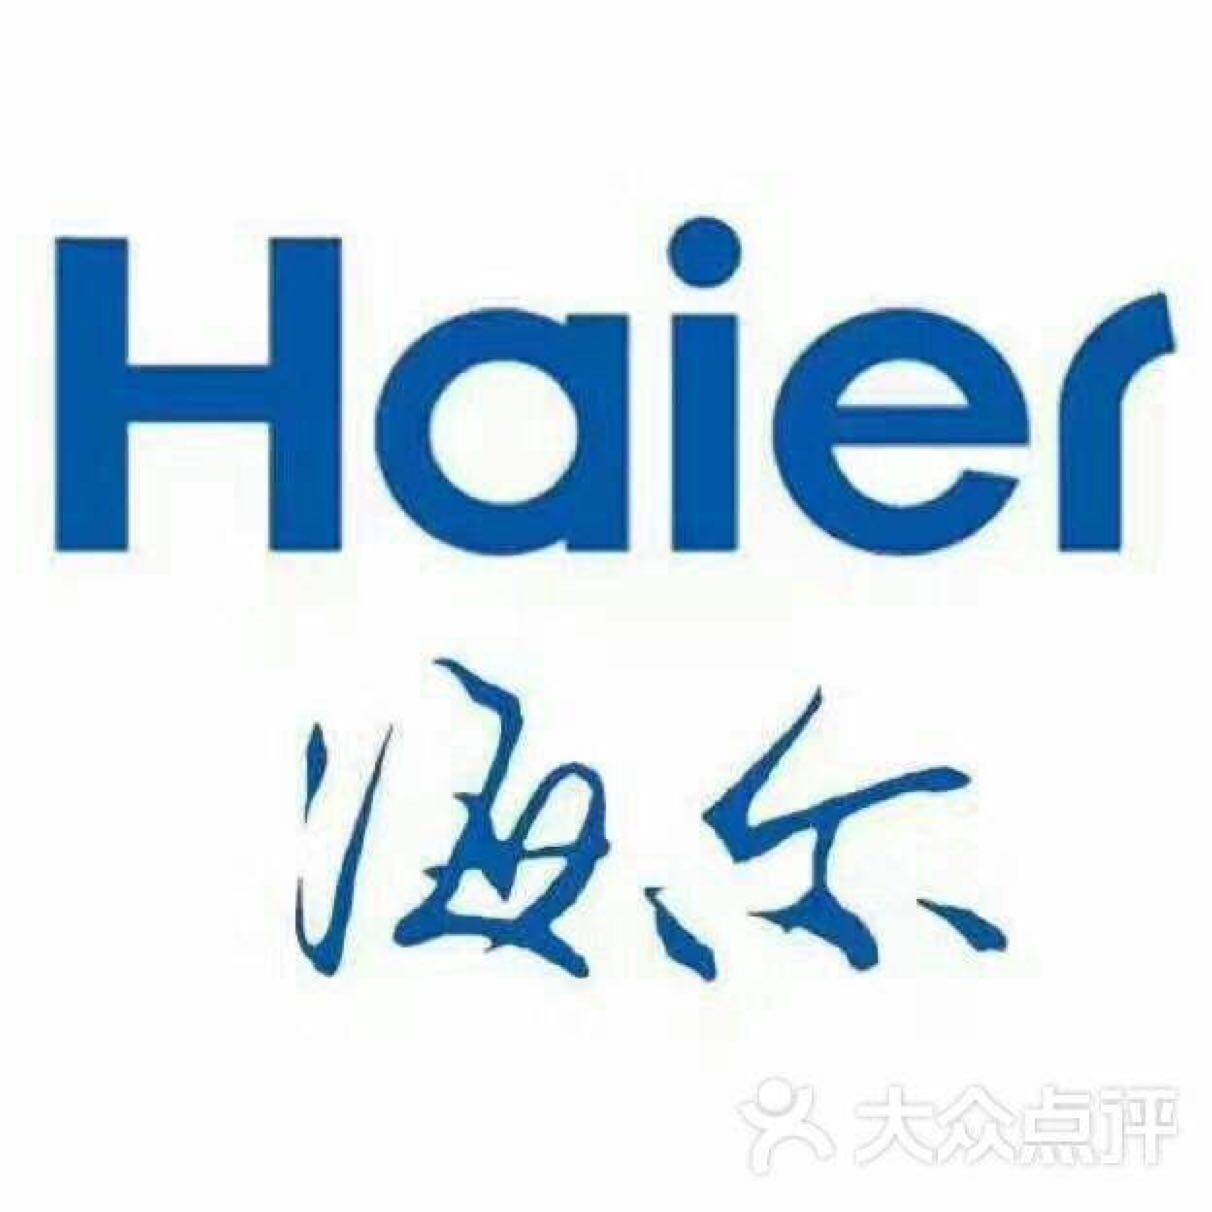 海尔特种电冰柜招聘logo